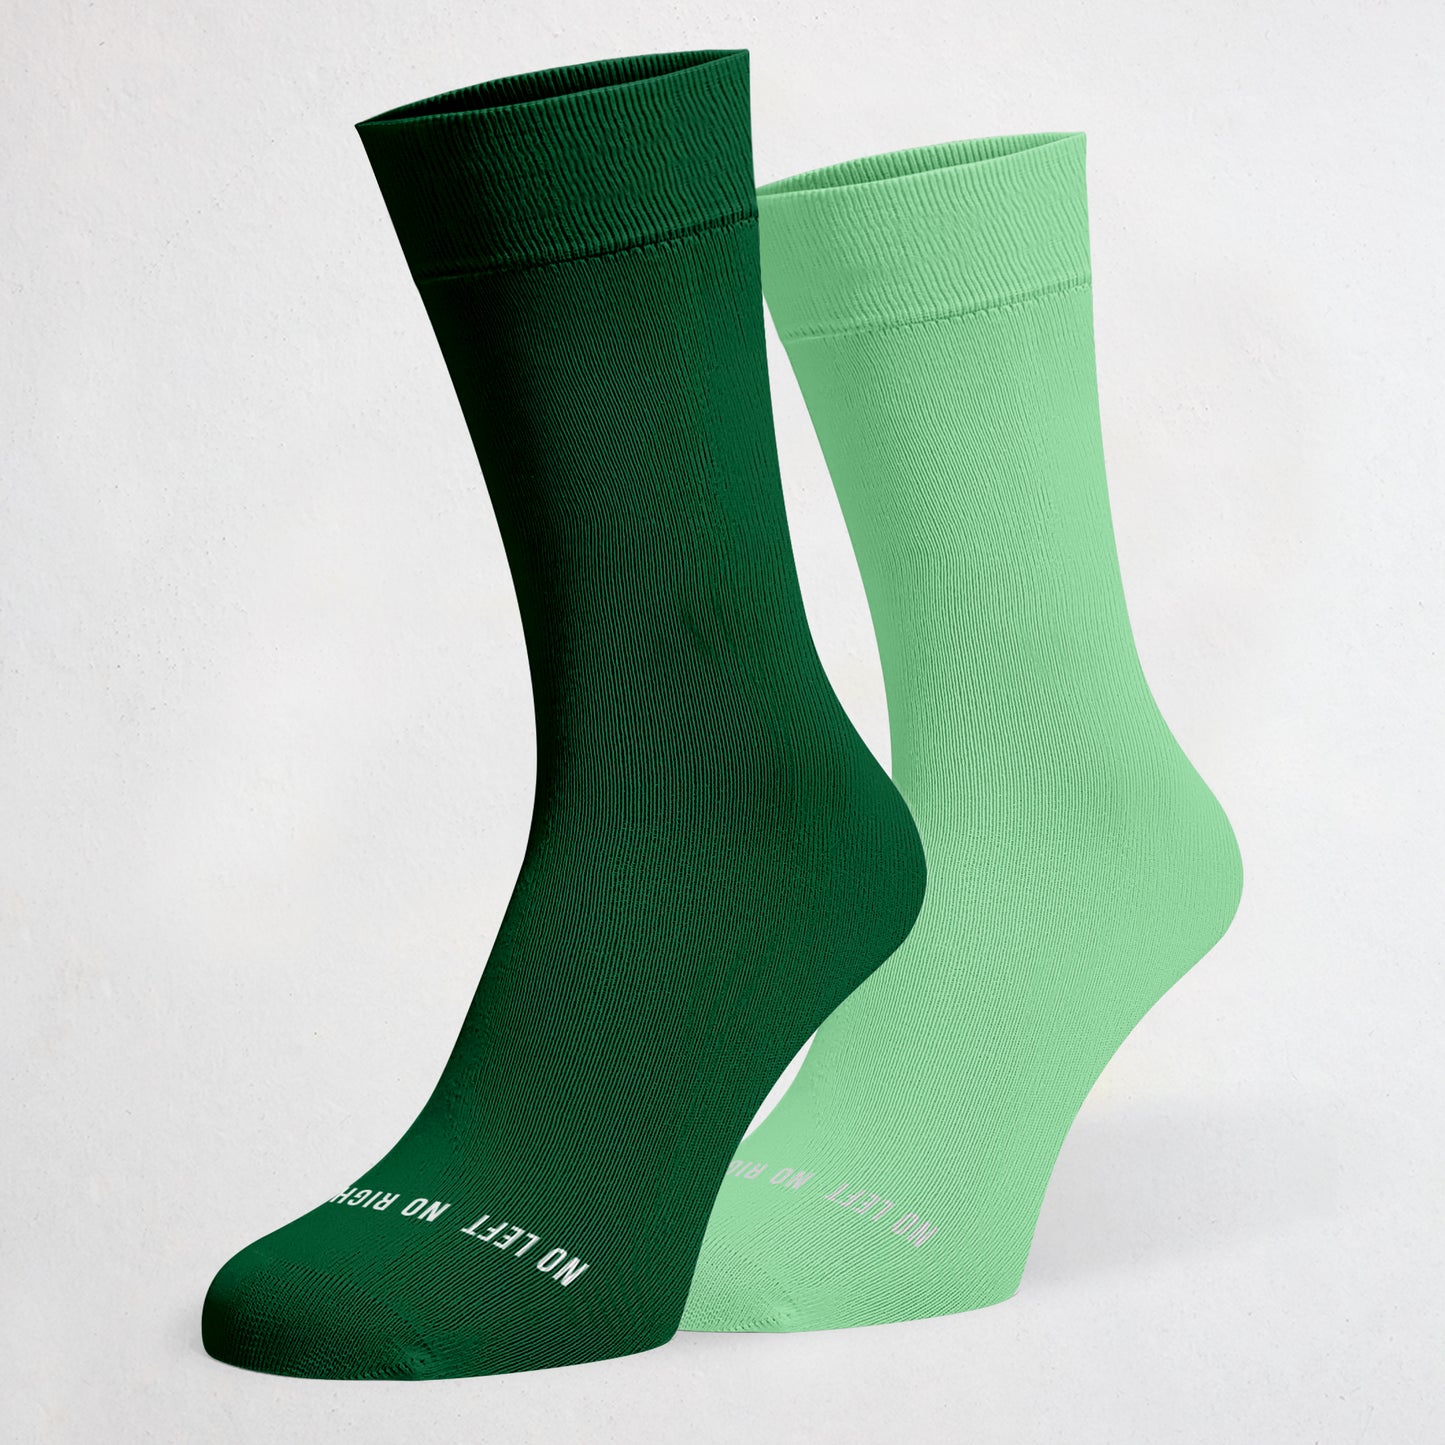 Dark Green & Seafoam Green Odd Socks